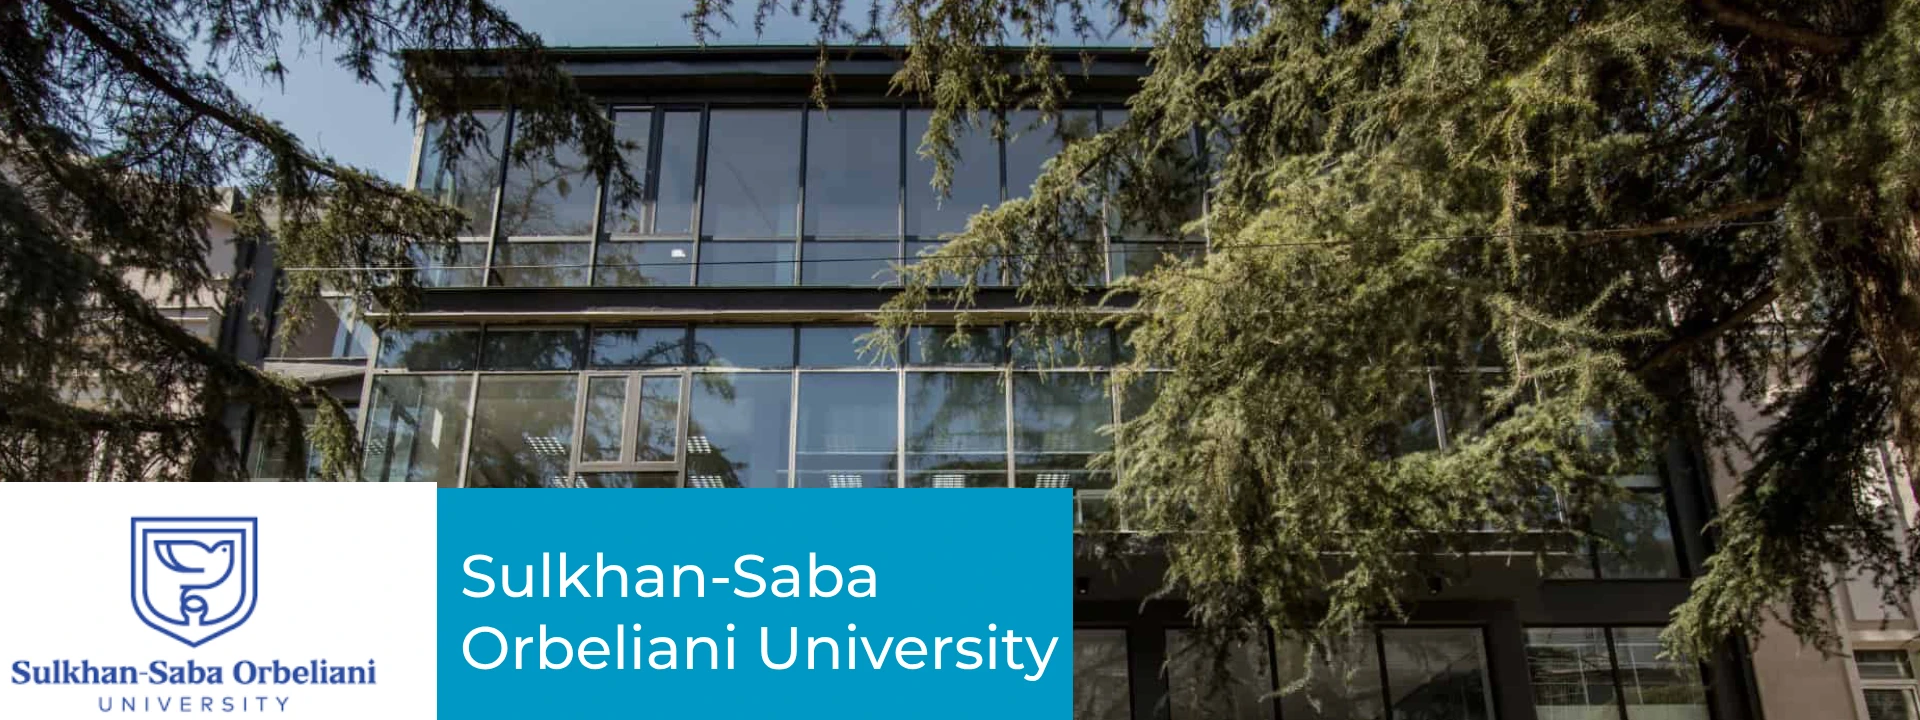 Sulkhan Saba Orbeliani University